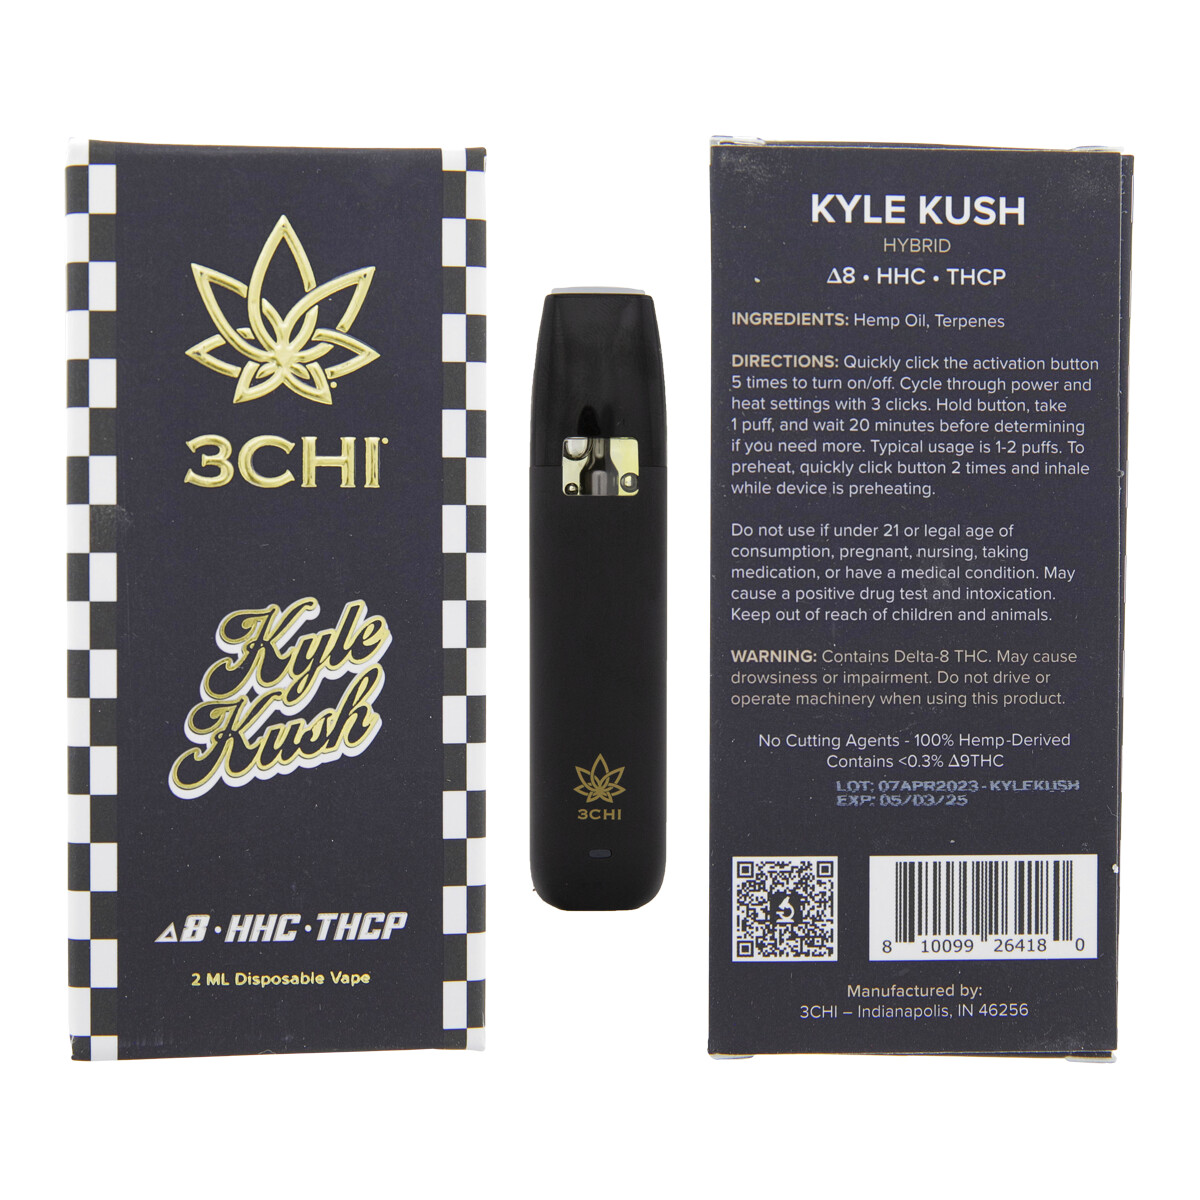 3CHI Kyle Kush - 2g D8/HHC/THCP